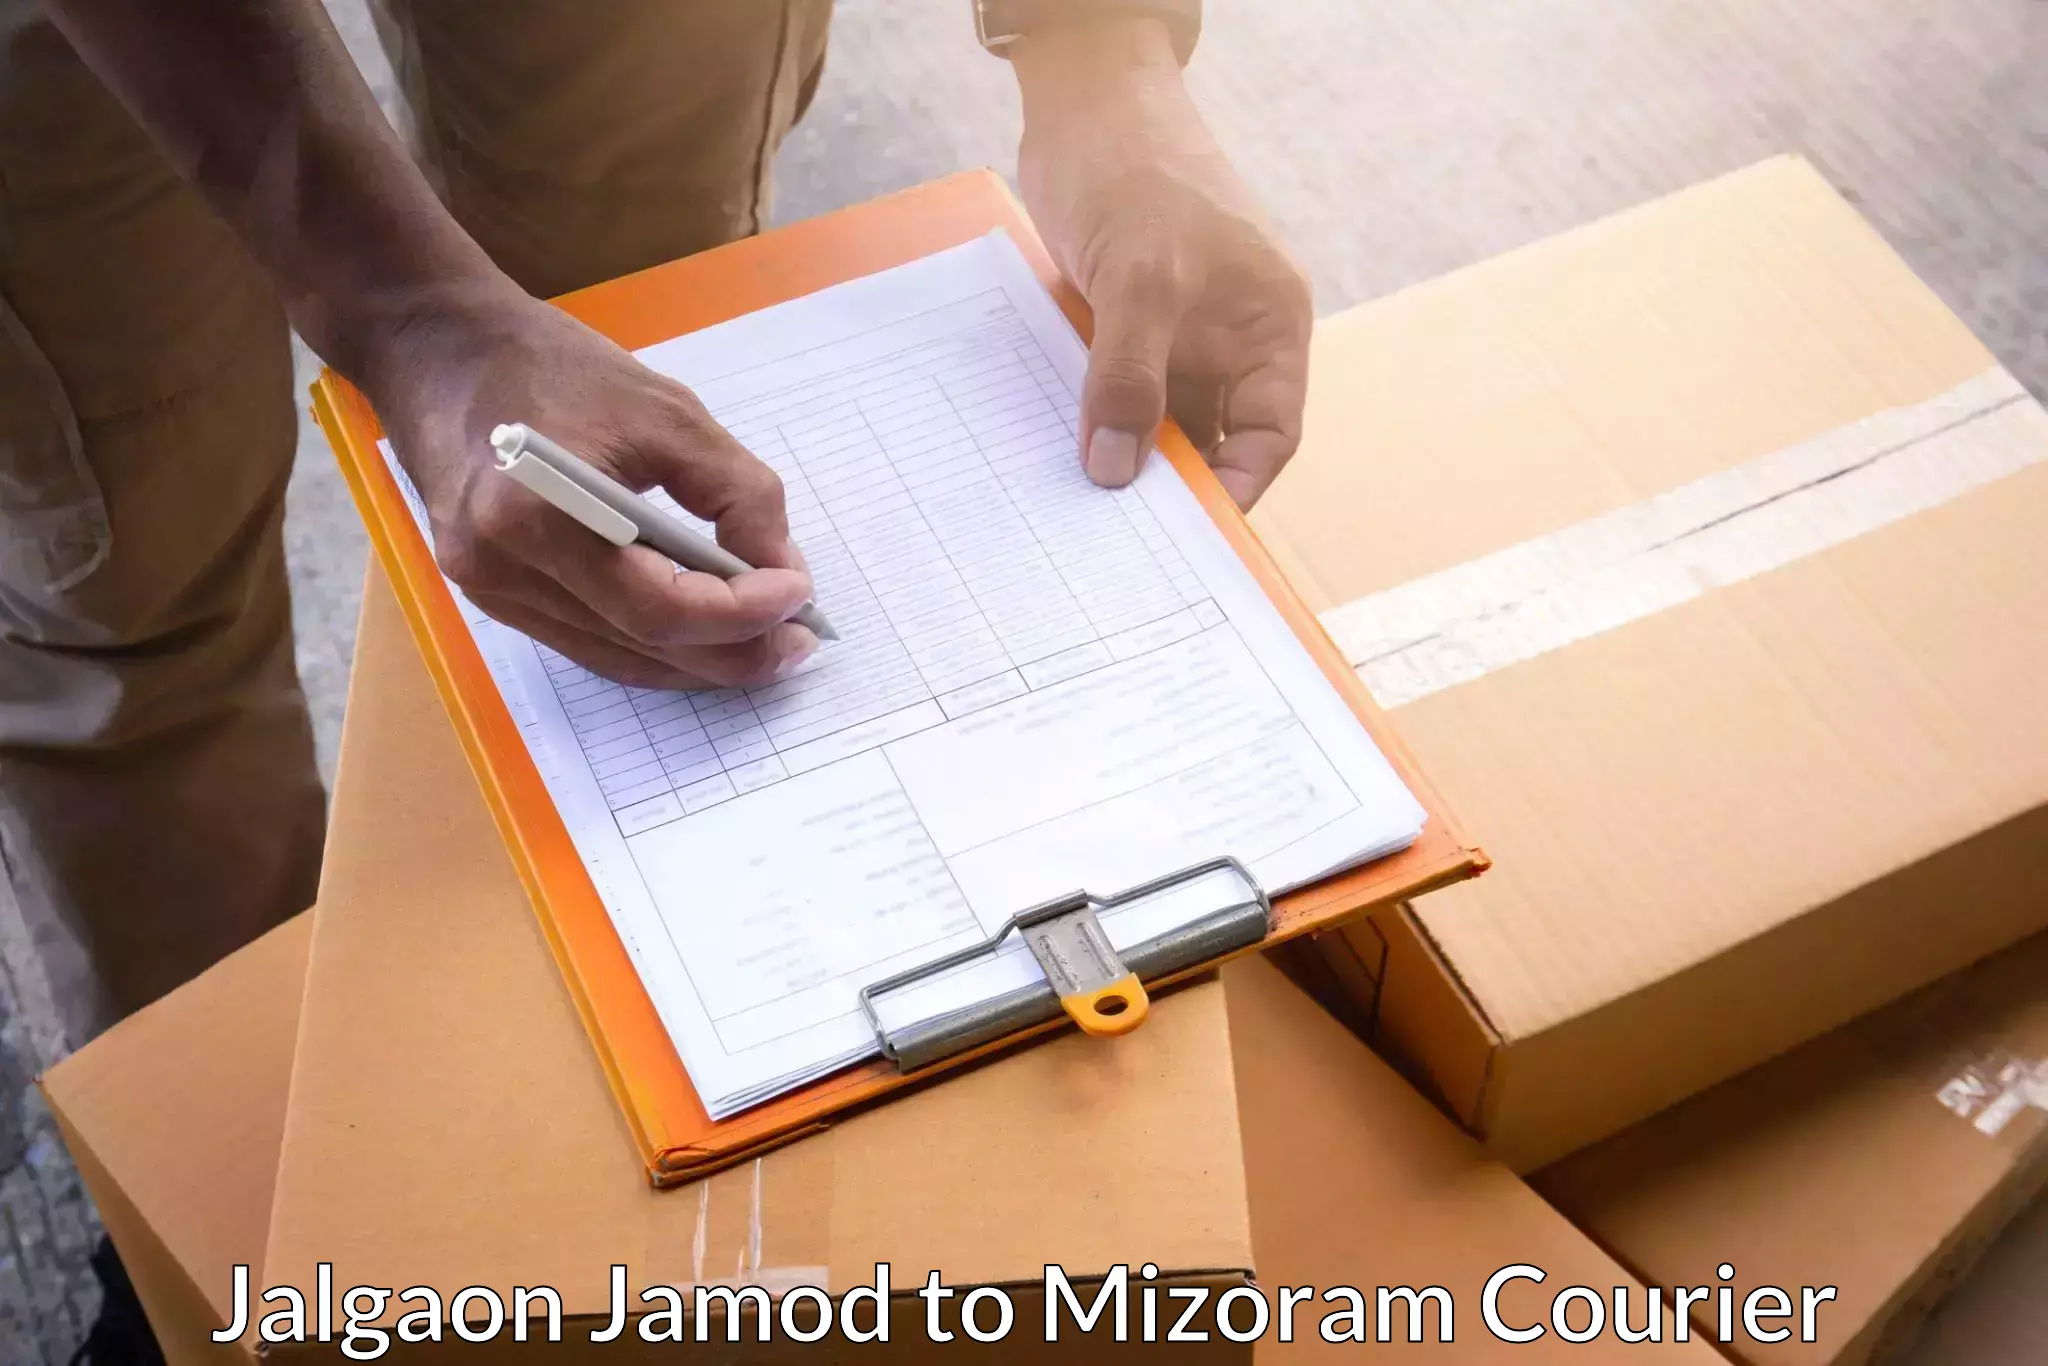 Customer-centric shipping Jalgaon Jamod to Kolasib